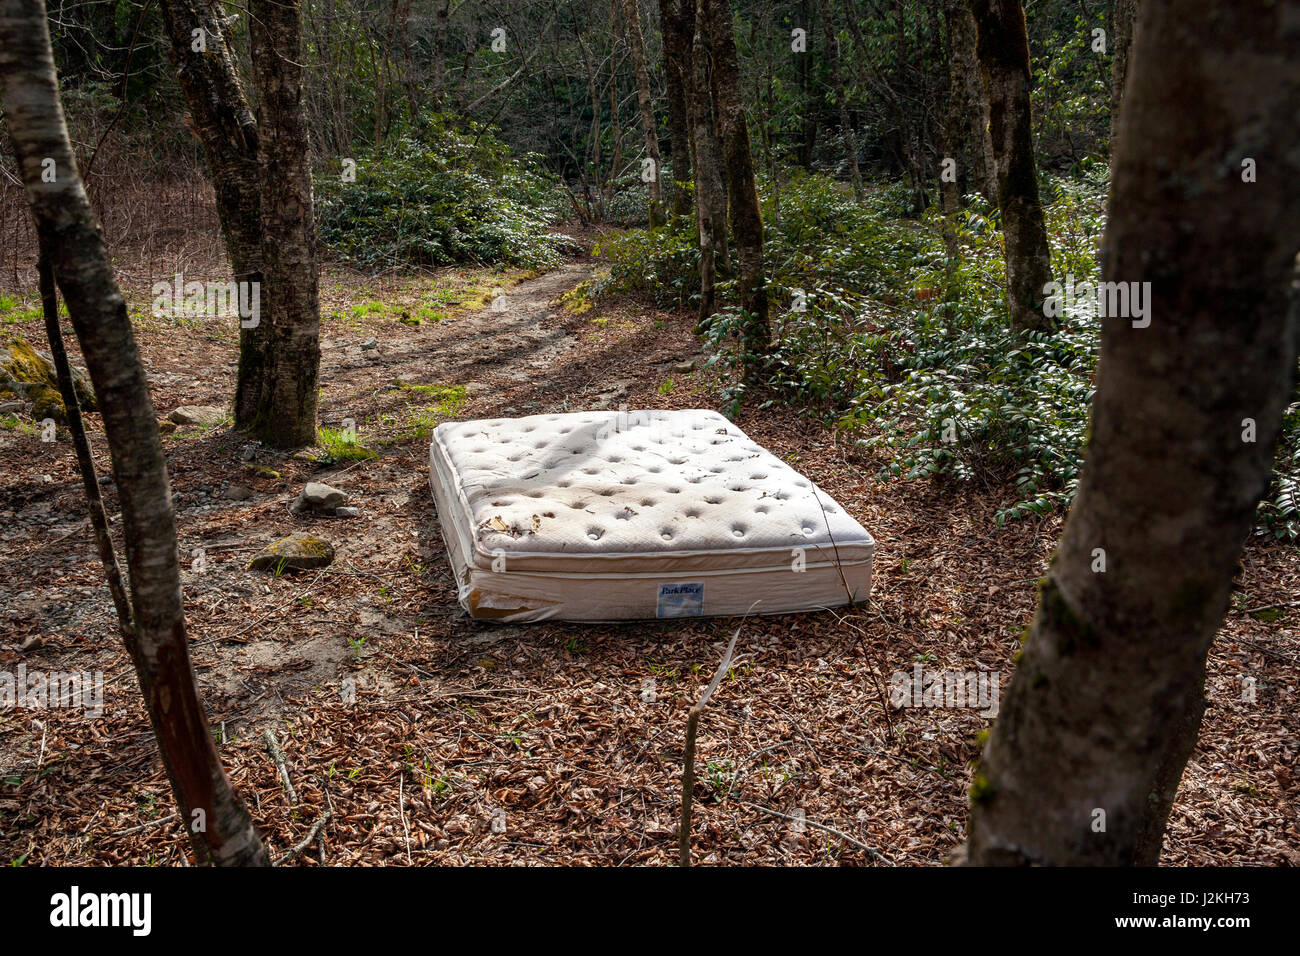 Matelas abandonnés en forêt - Pisgah National Forest, à proximité de Brevard, North Carolina, États-Unis Banque D'Images